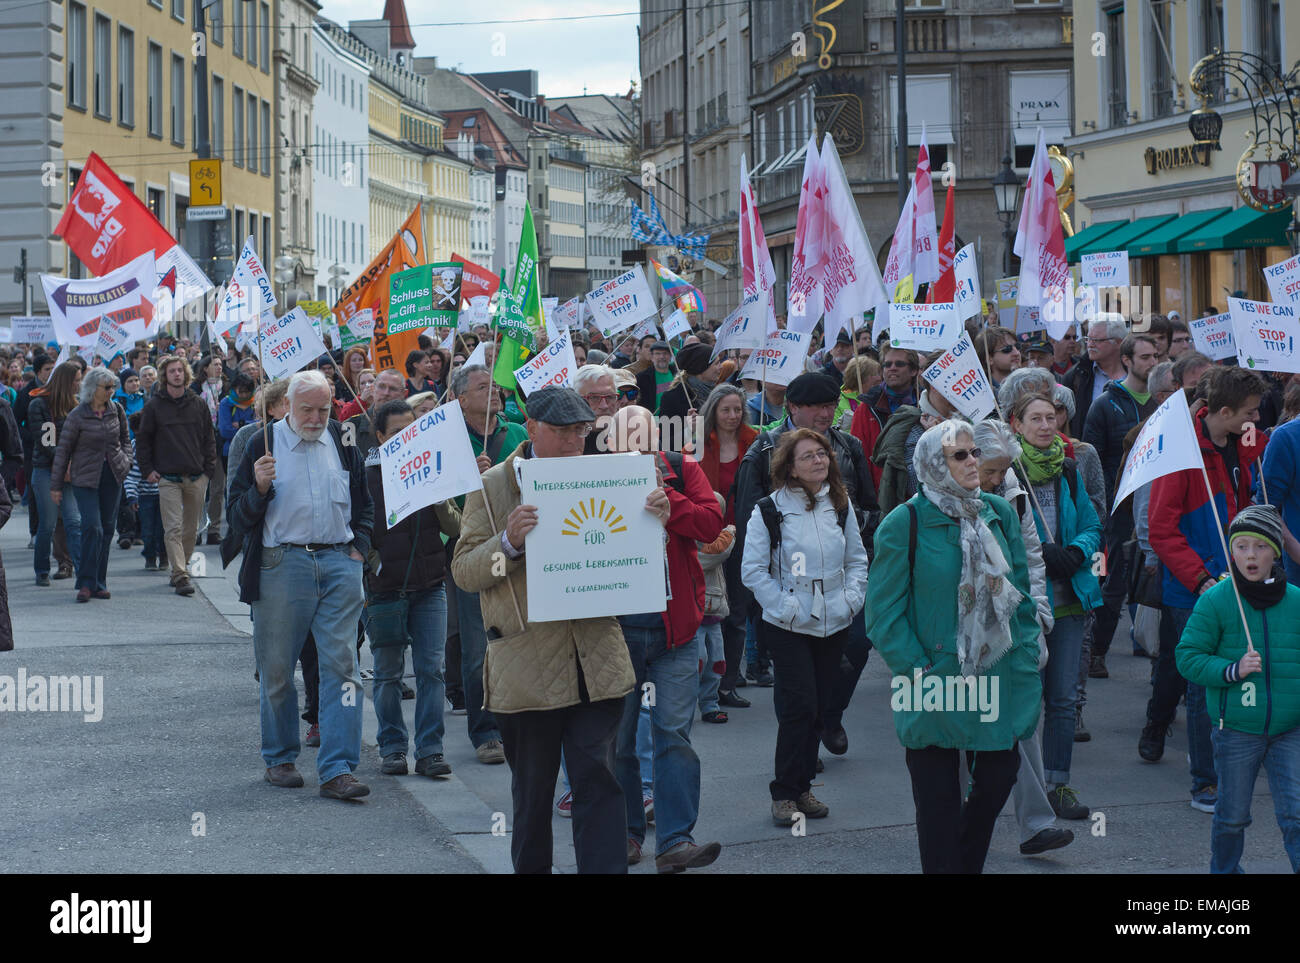 Monaco di Baviera, Germania - 18 Aprile 2015: manifestanti giro in vigore per protestare TTIP trattativa commerciale, gli scambi e gli investimenti transatlantici di partenariato, a Monaco di Baviera in Germania. Foto Stock